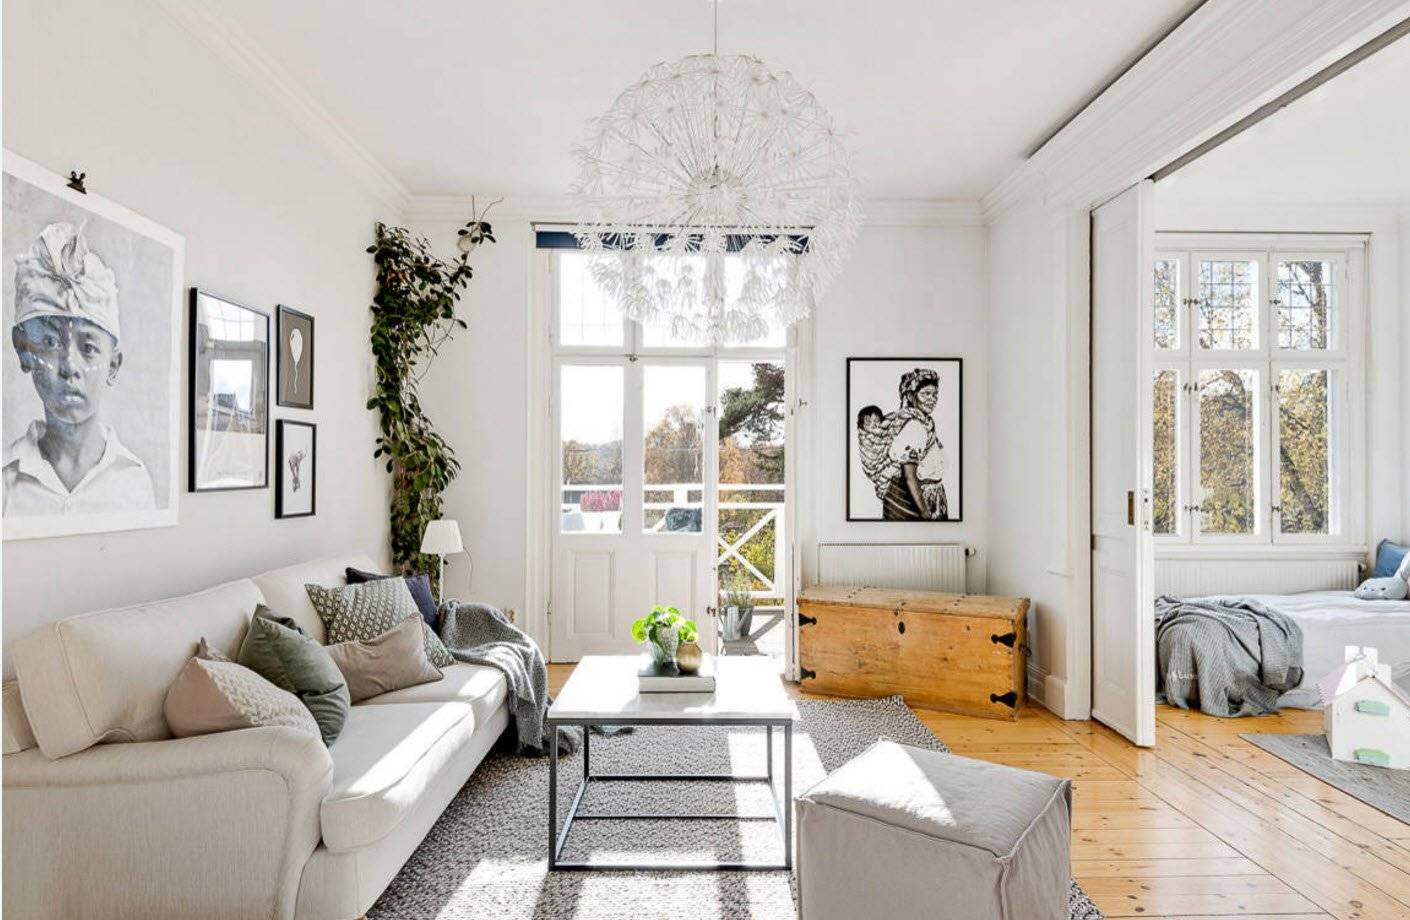 Скандинавский стиль в интерьере малогабаритных квартир: фото, особенности и варианты оформления